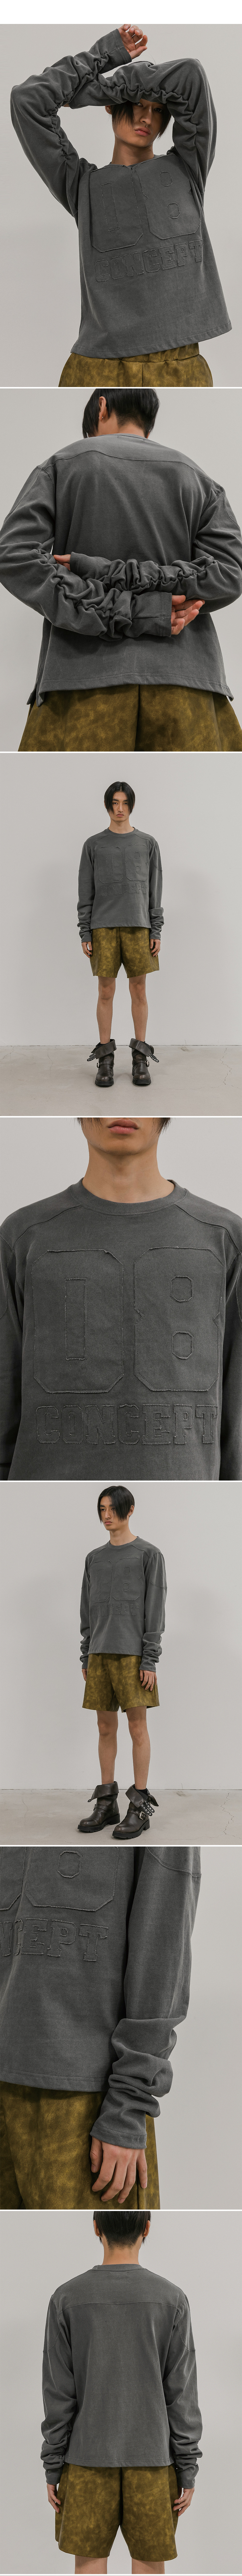 08 sleeve wrinkled t-shirt(gray)